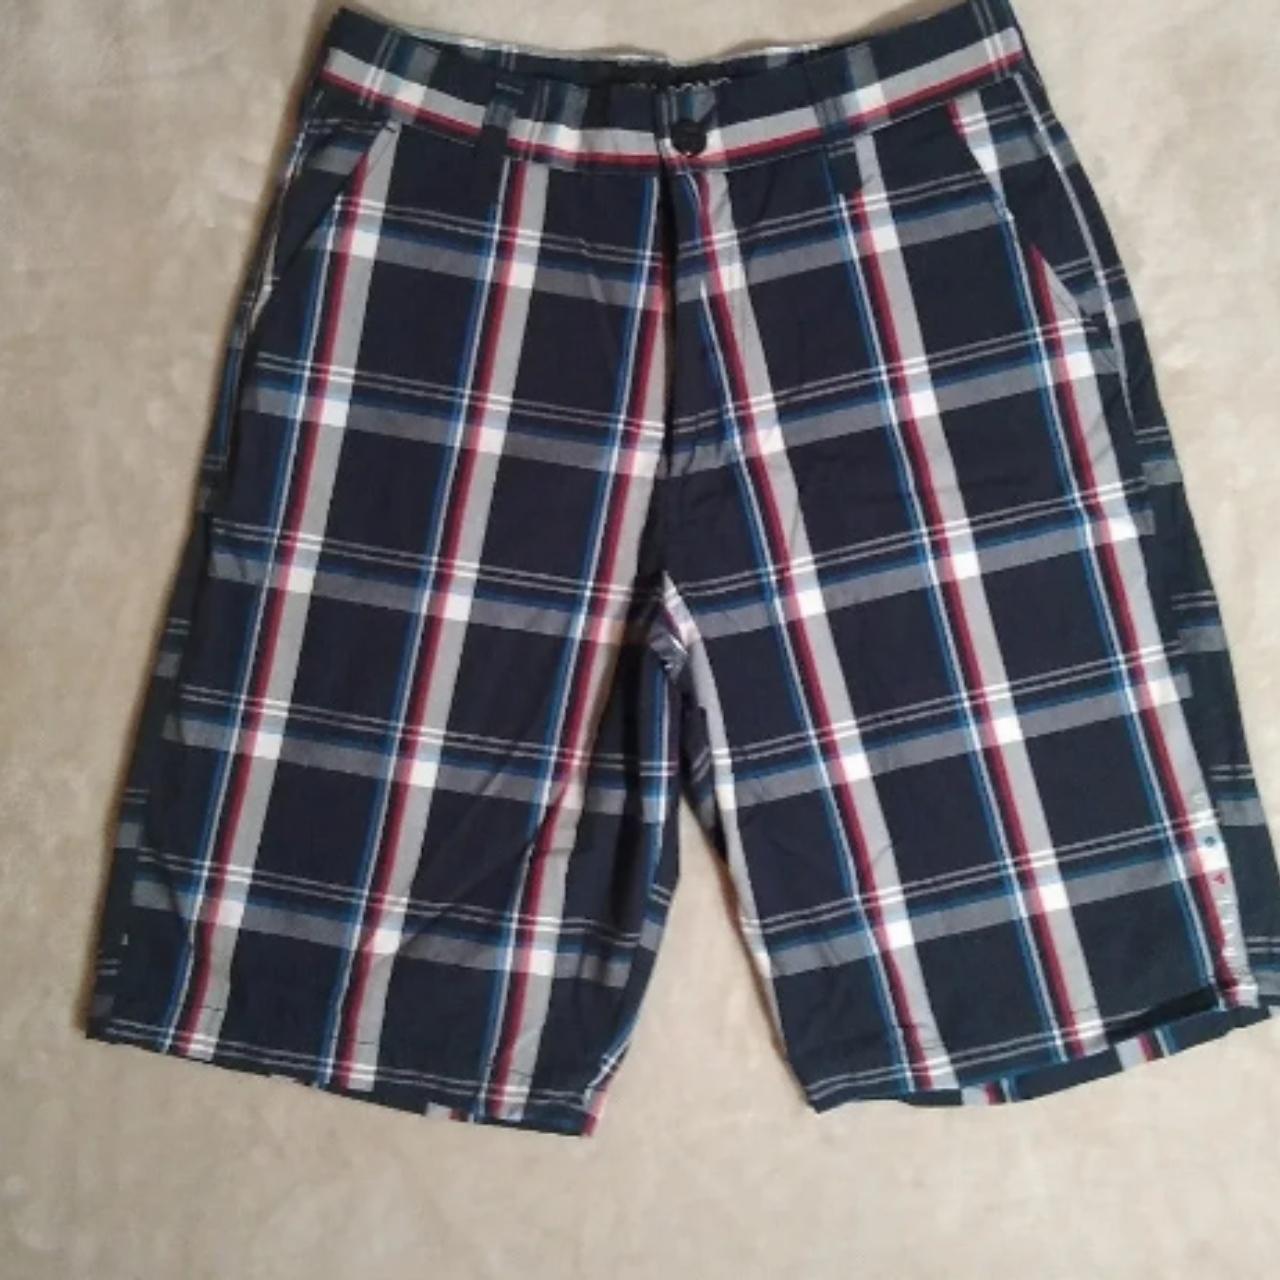 Men's Billabong Plaid Shorts - Casual & Essential... - Depop